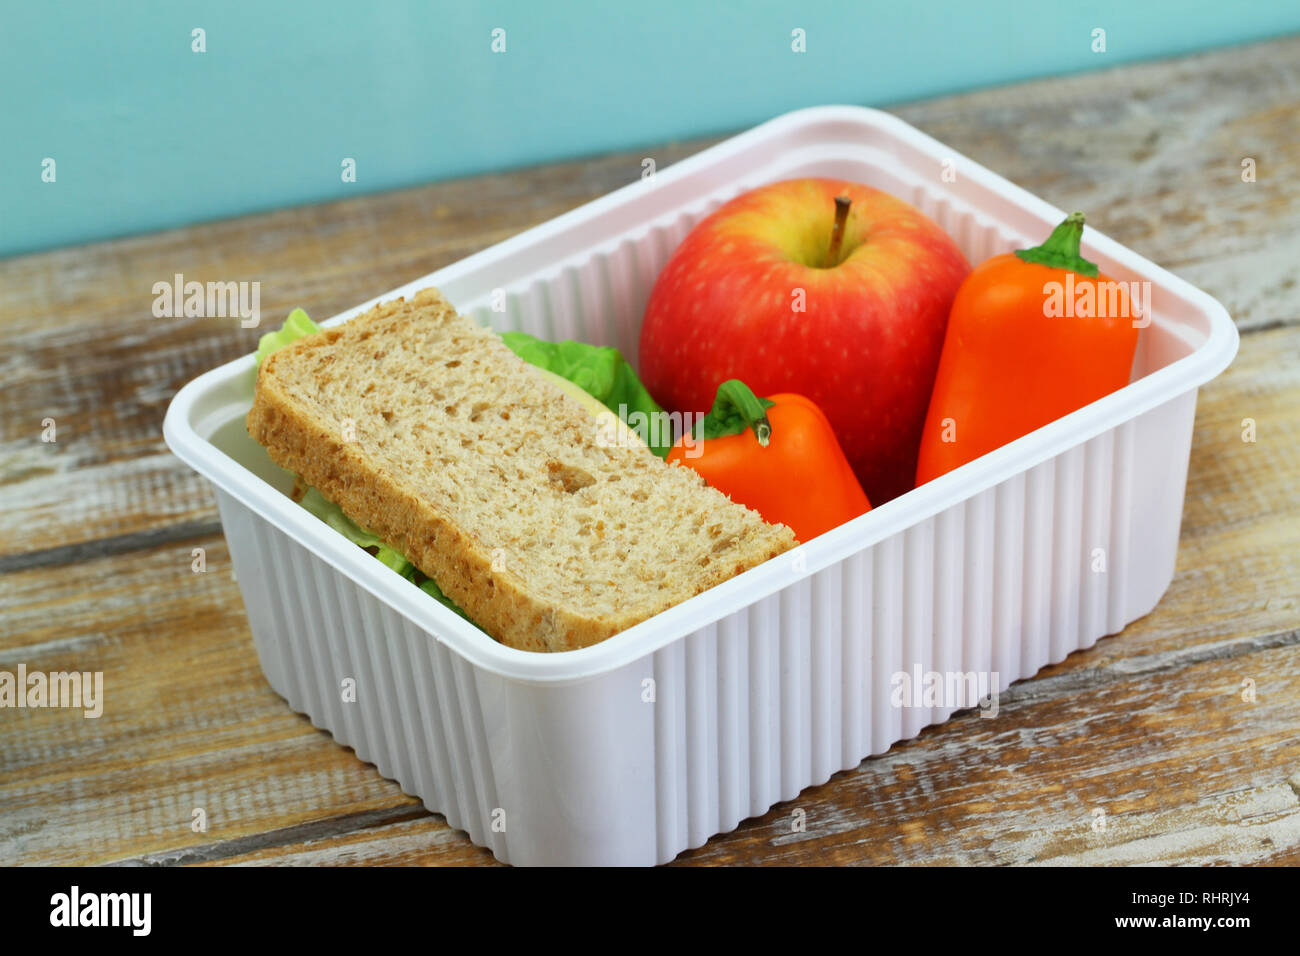 Scuola di sano lunchbox contenente formaggio marrone sandwich, croccante di peperone giallo e rosso apple Foto Stock